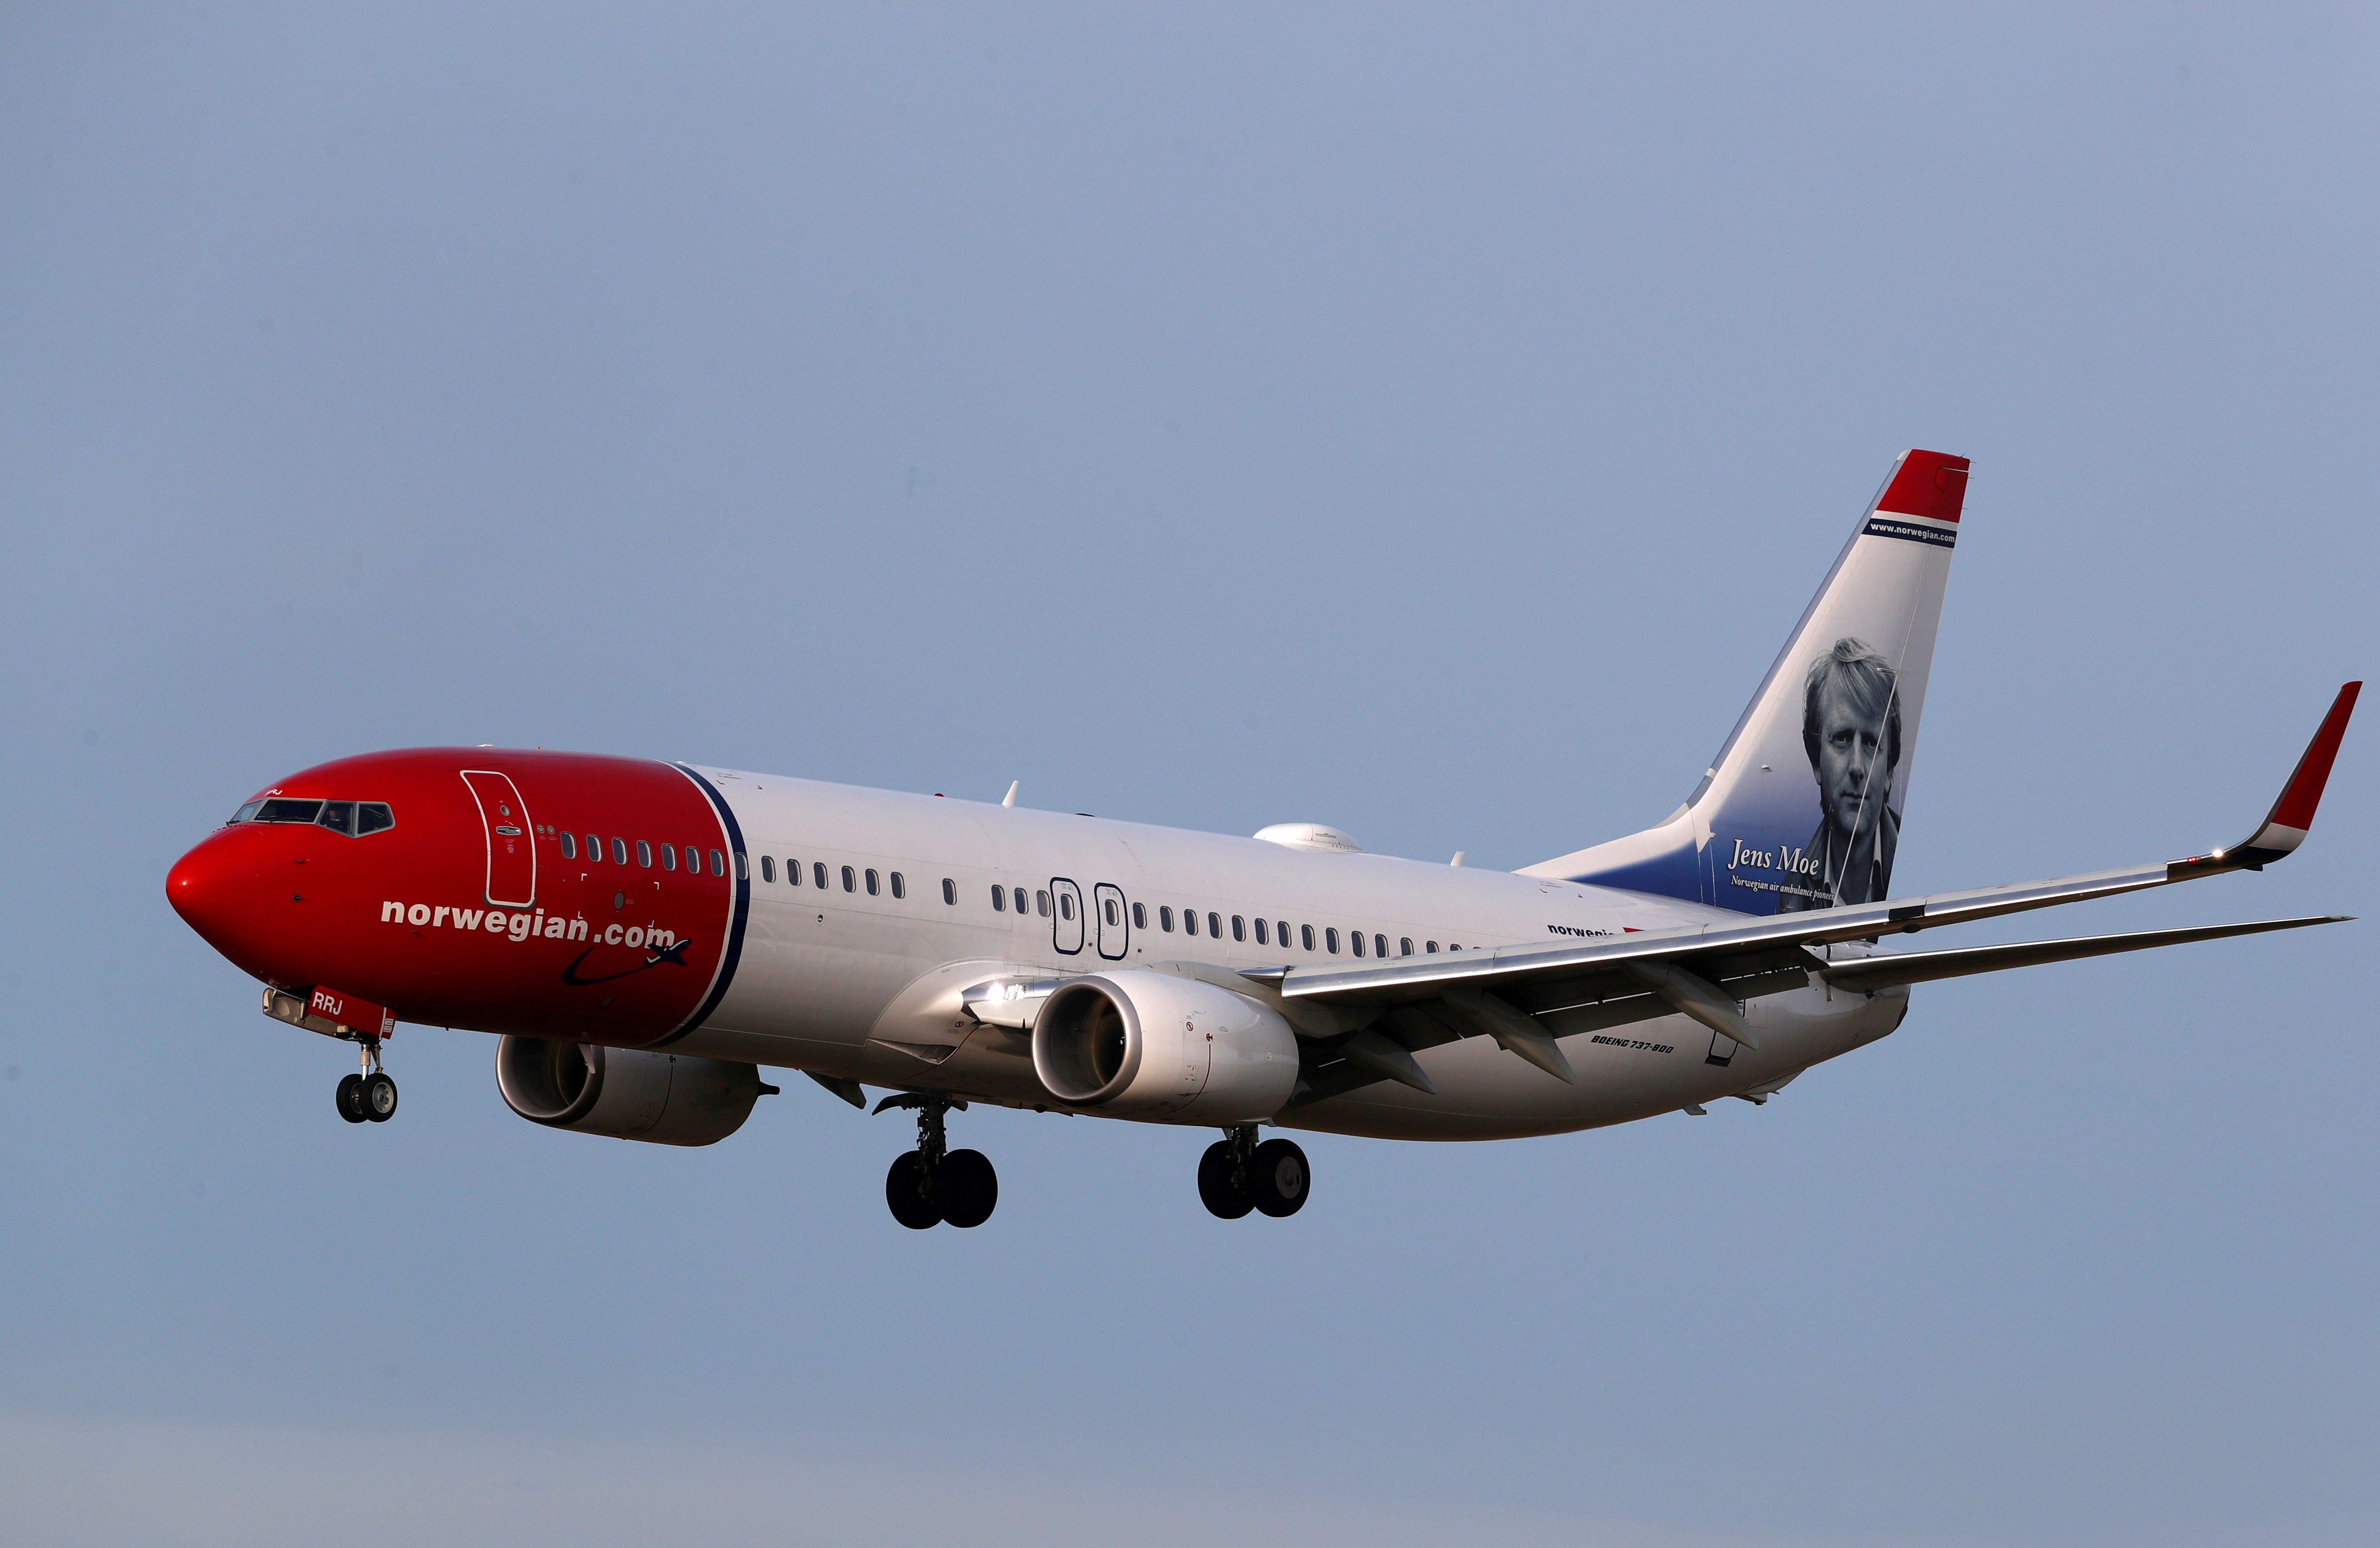 Norwegian Air to end transatlantic flights, seeks state help